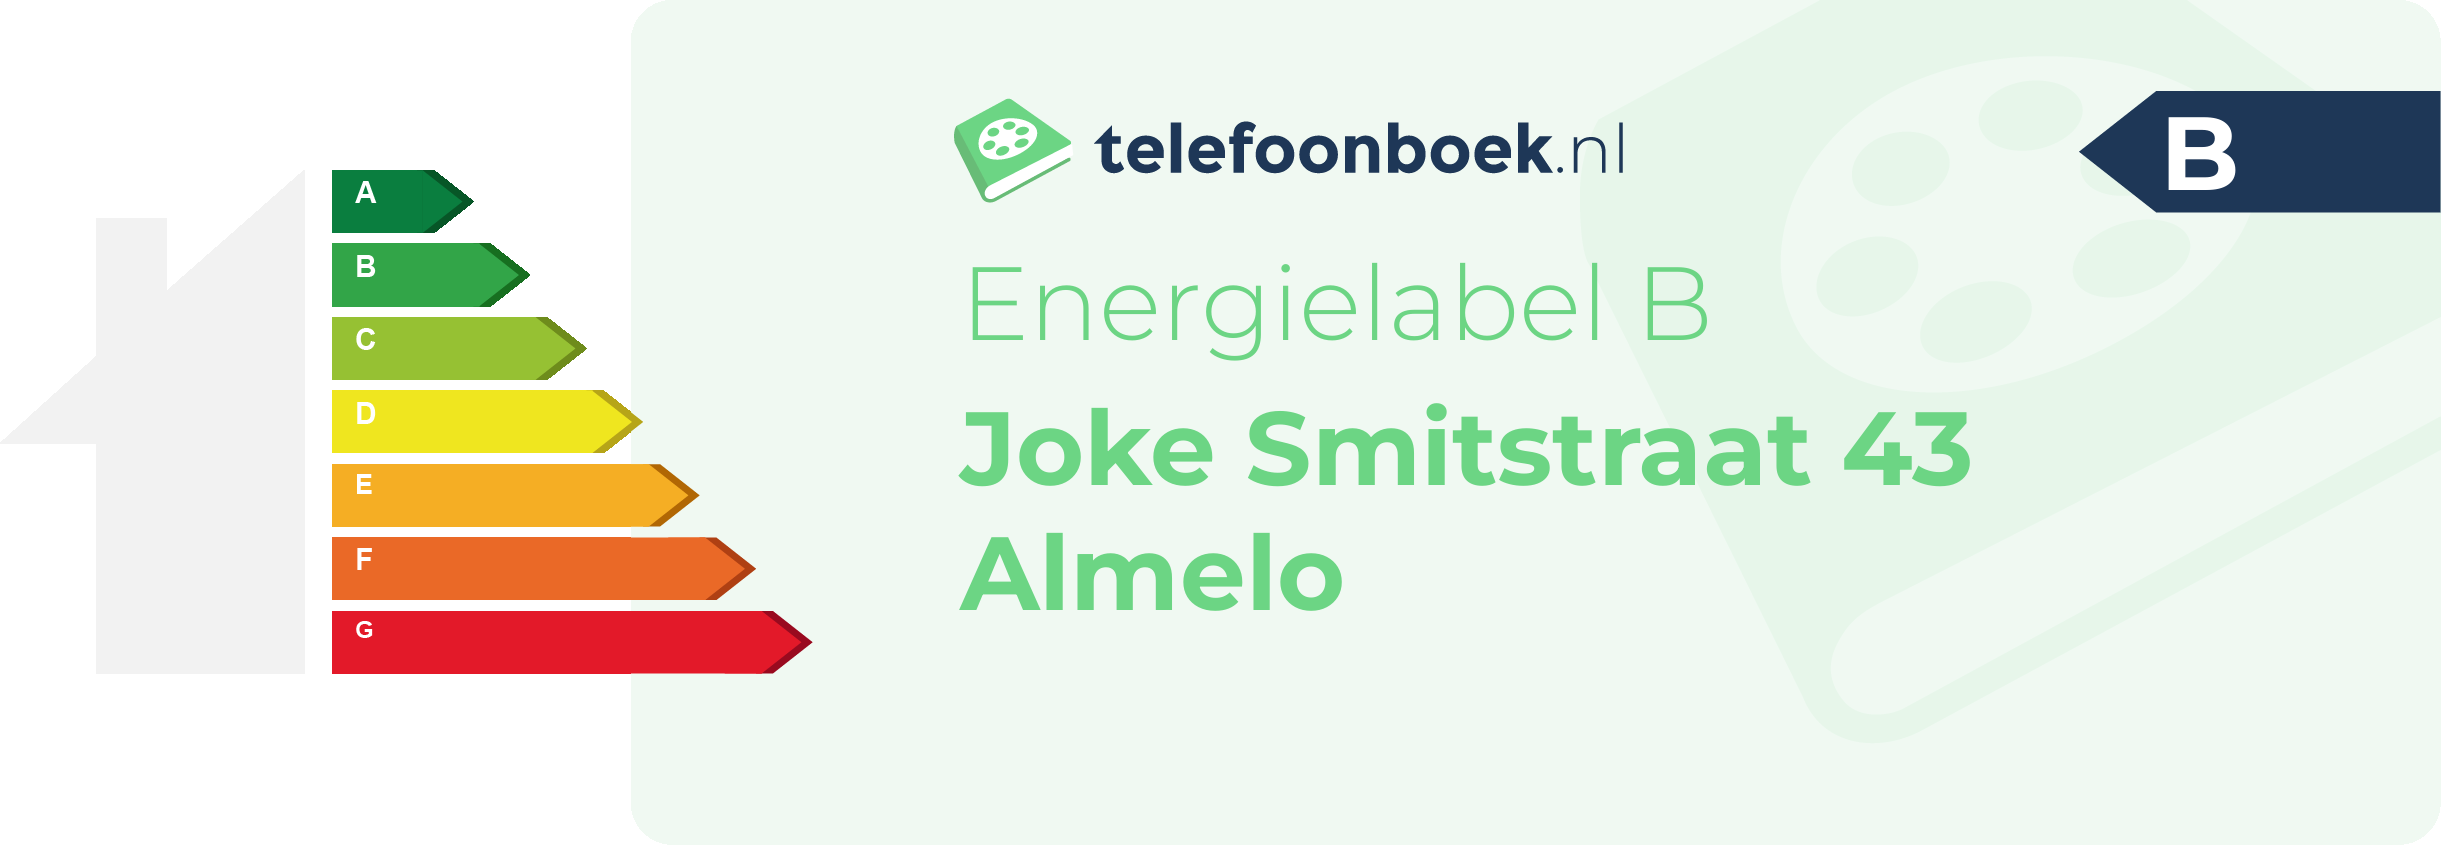 Energielabel Joke Smitstraat 43 Almelo